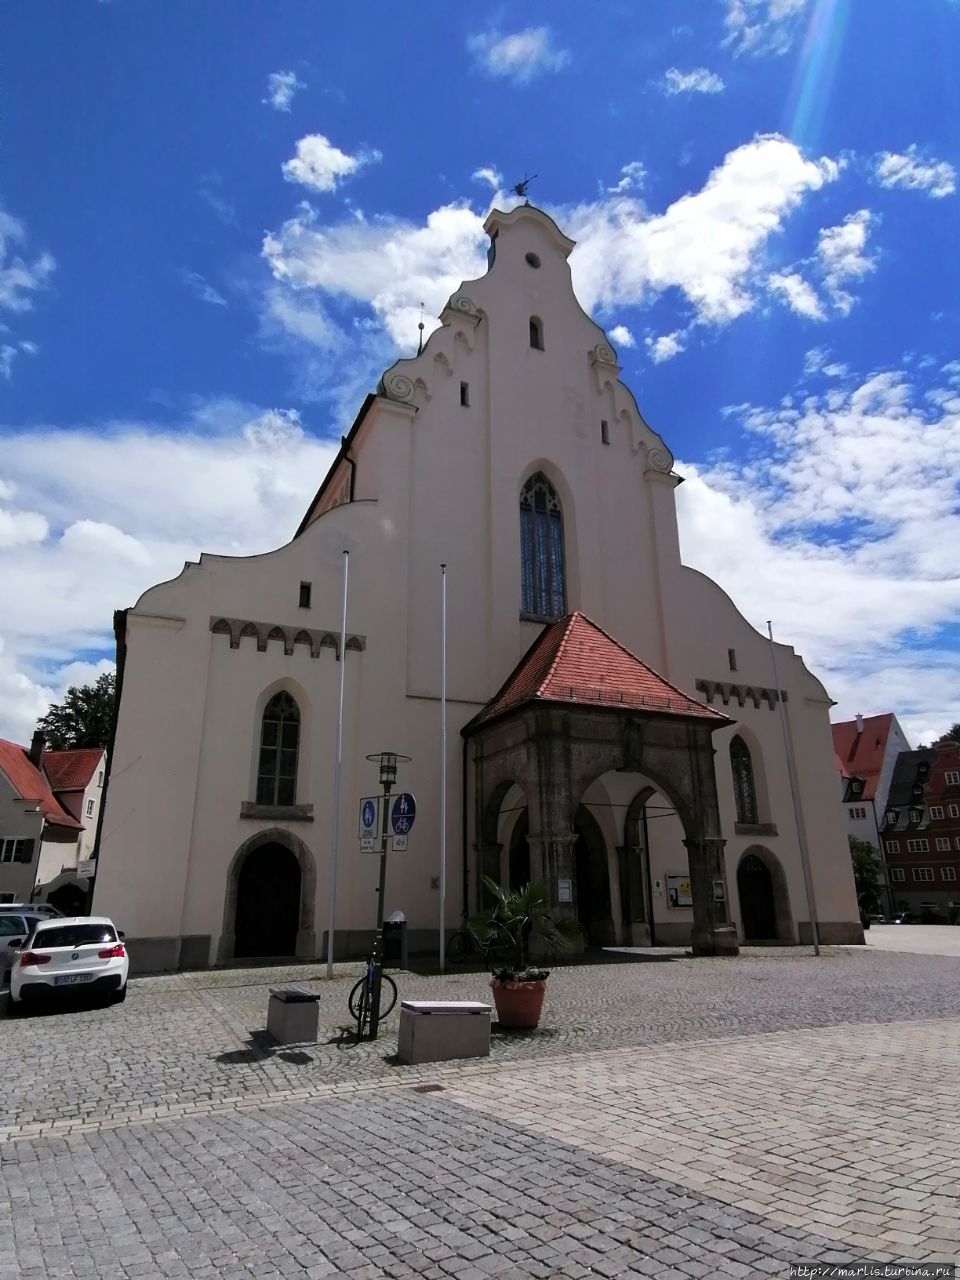 St. Mang Kirche Кемптен, Германия